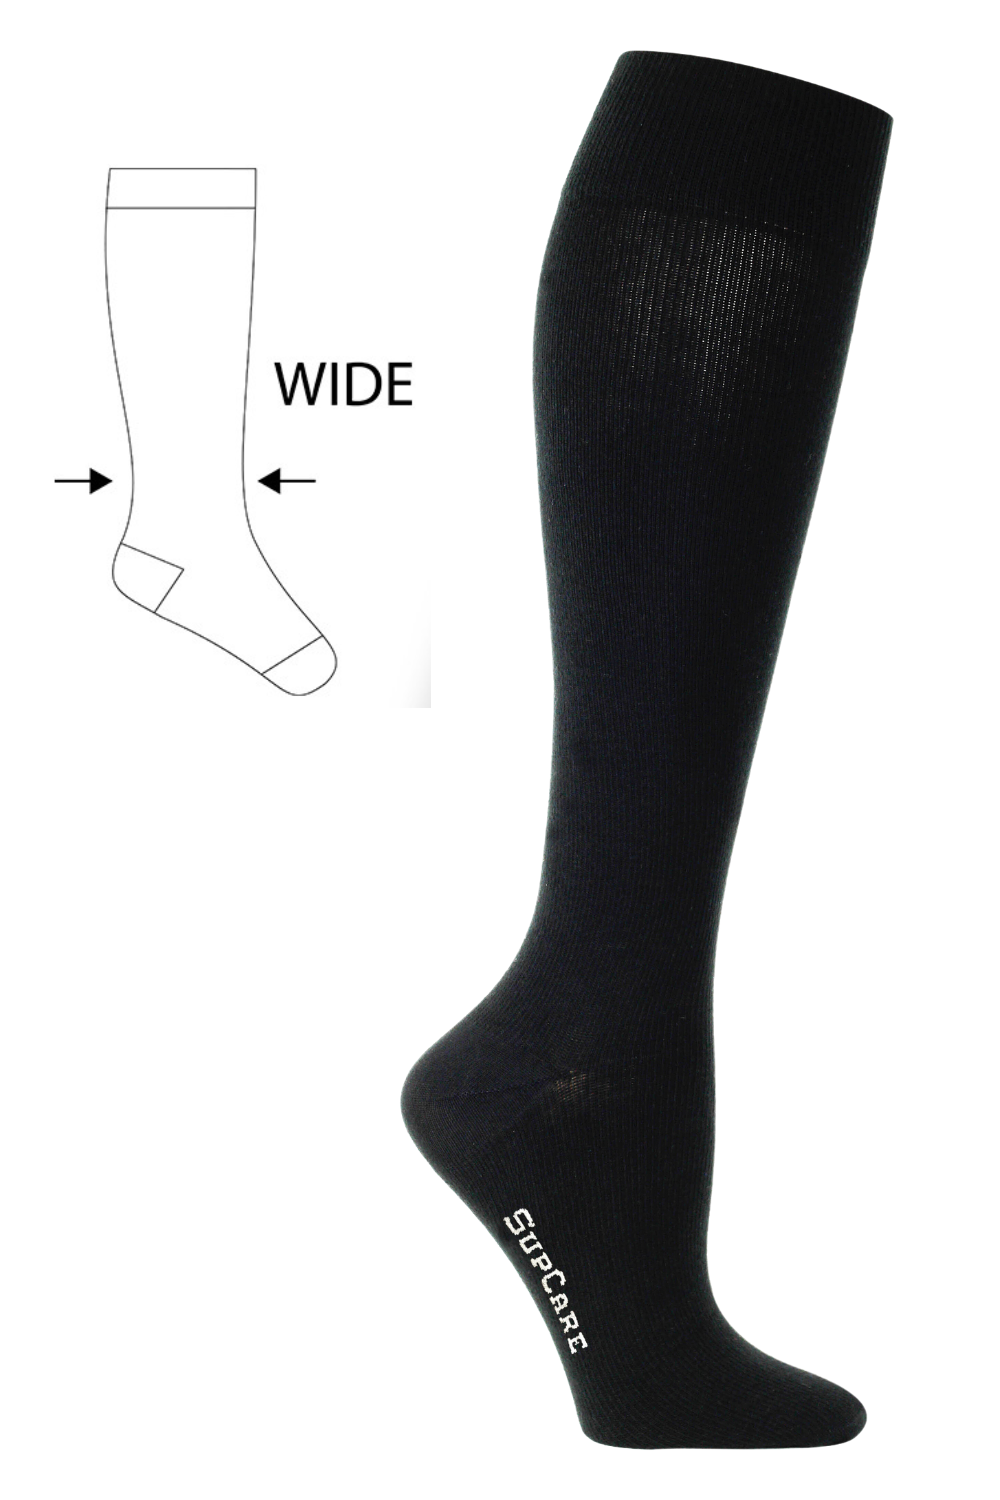 Compression Socks for Flying, Black